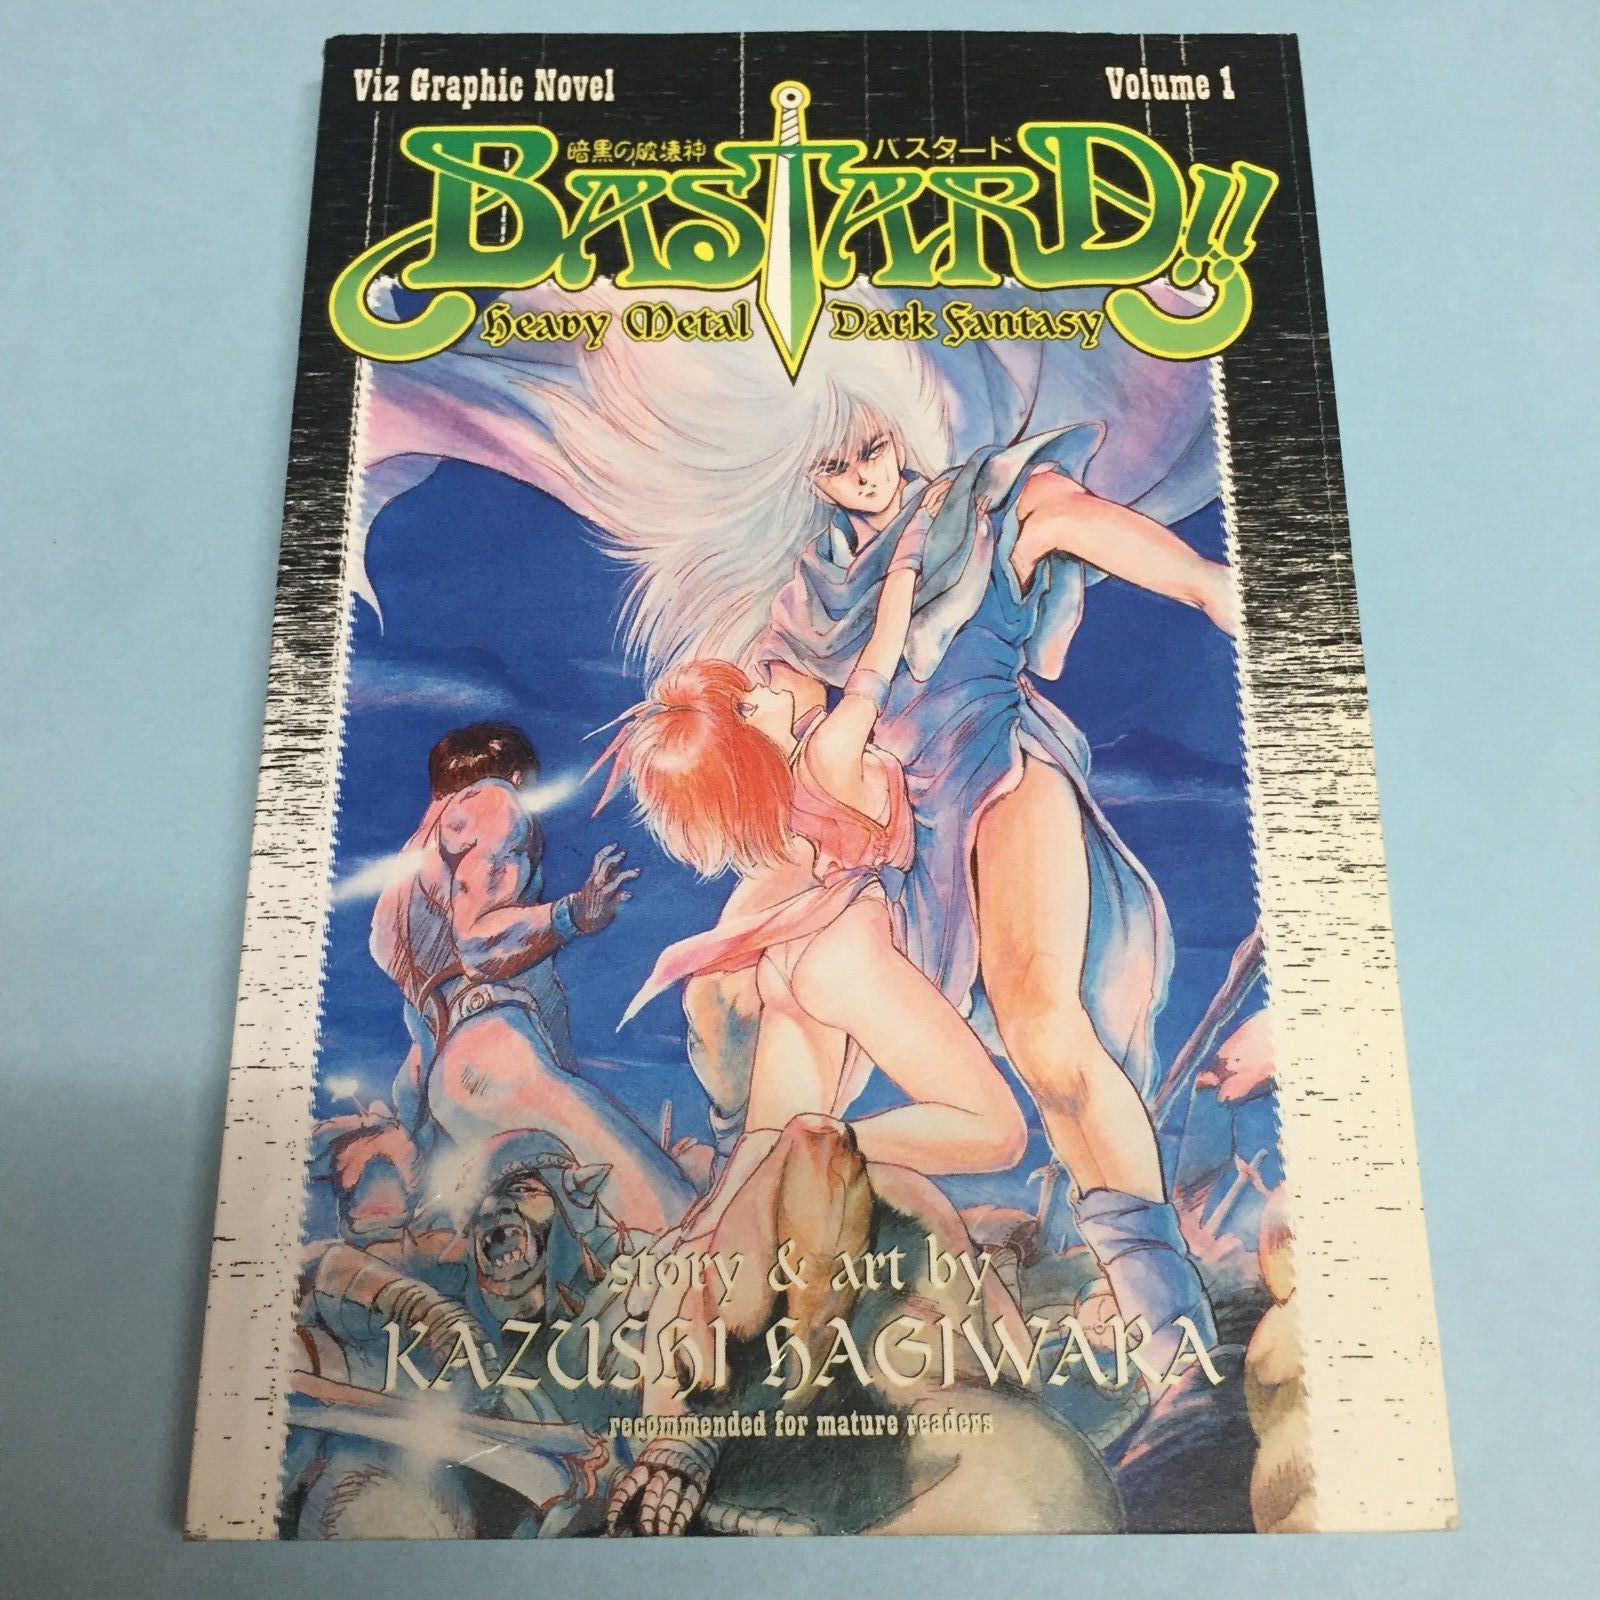 Bastard Volume 1 Manga English Kazushi Hagiwara Heavy Metal Dark Fantasy Vol 1